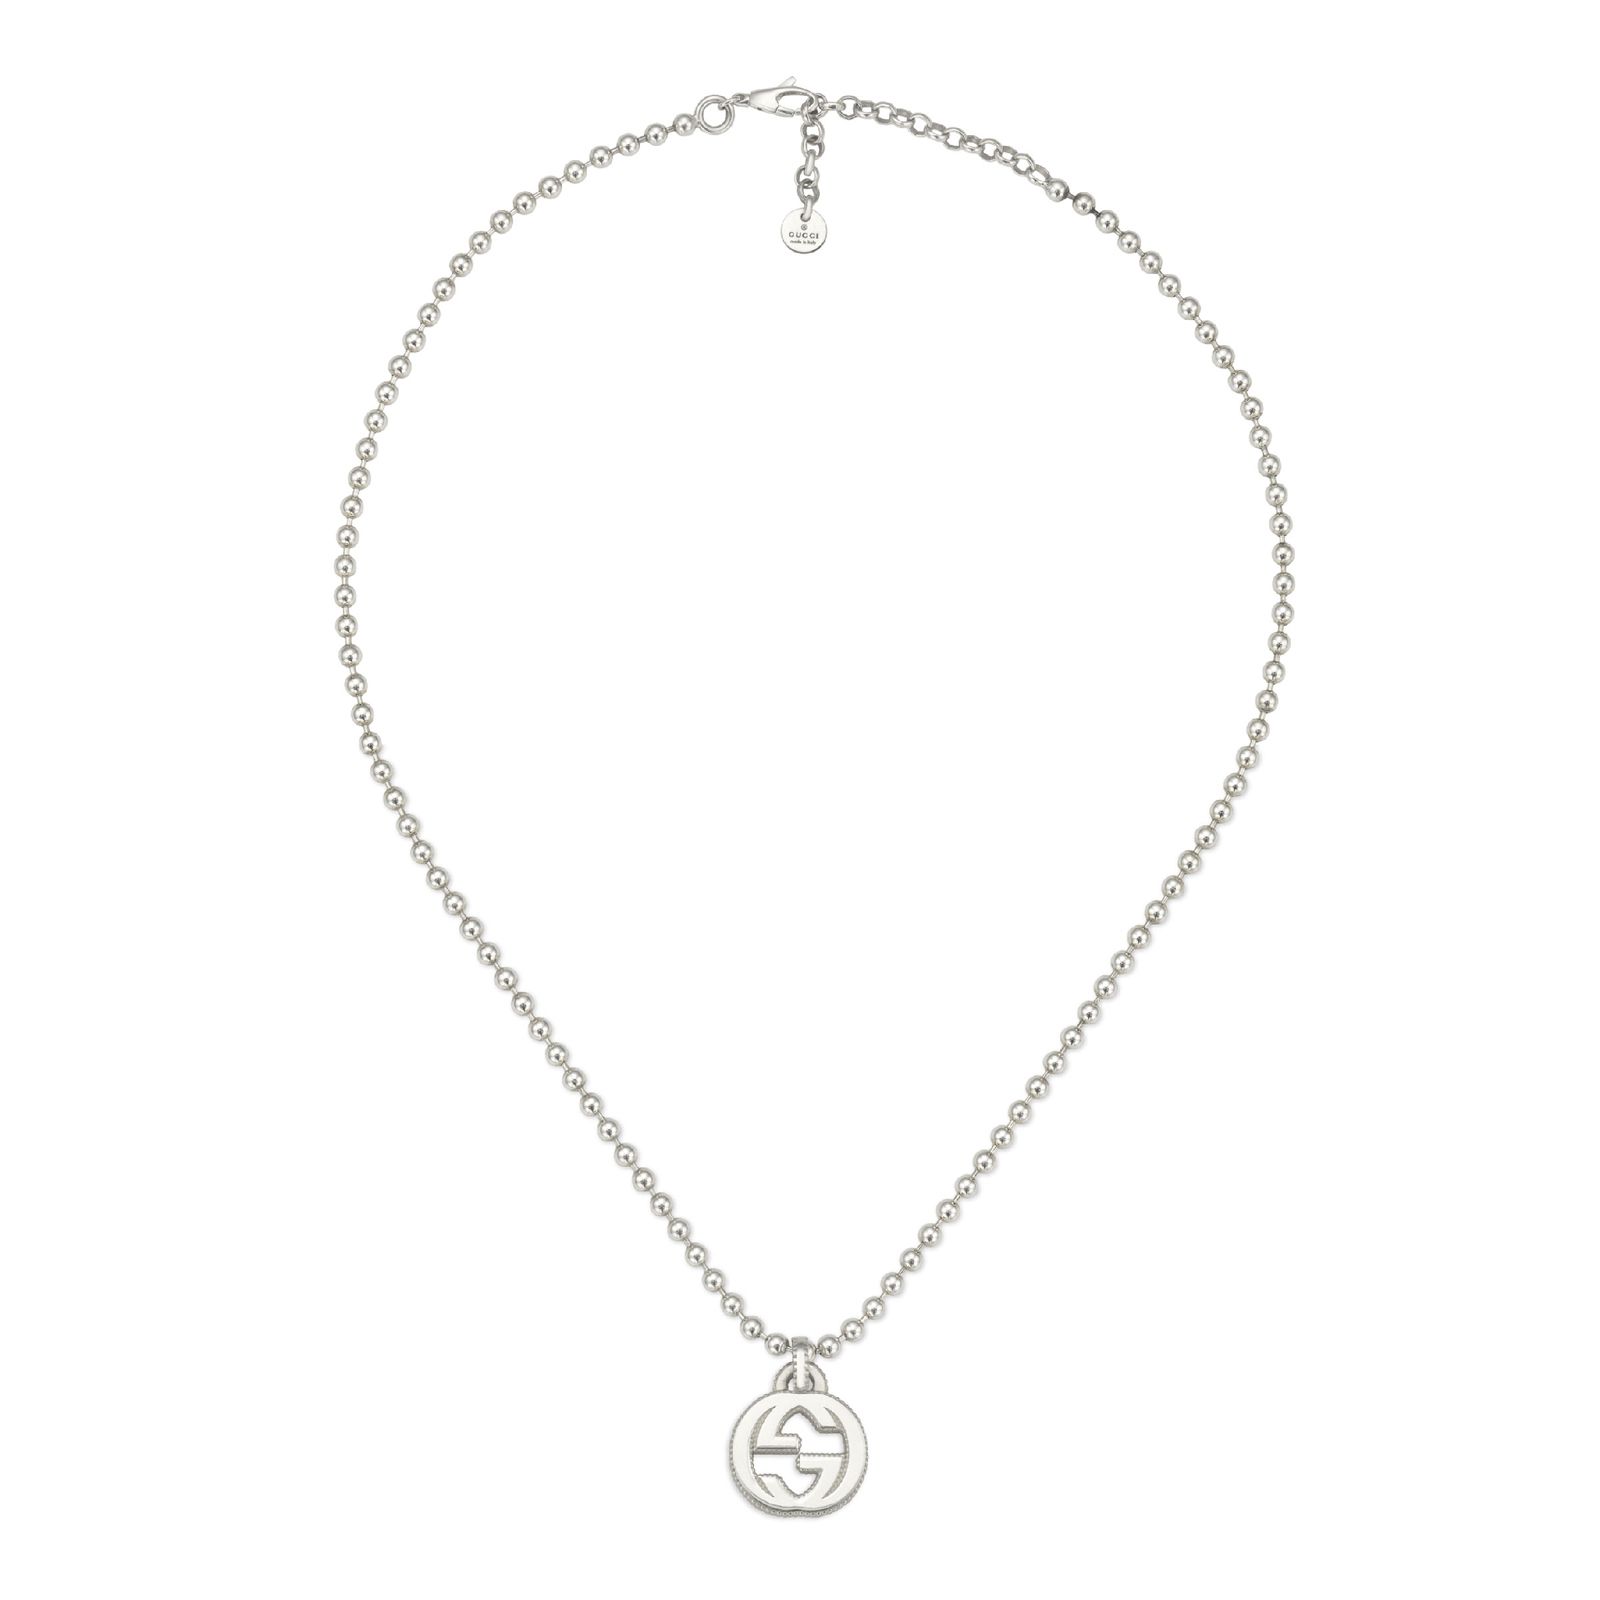 gucci silver interlocking g pendant